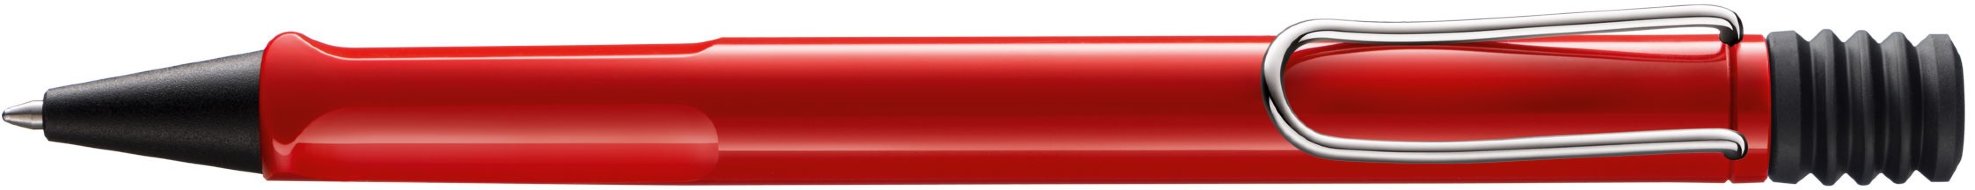 Шариковая ручка Lamy safari, красный